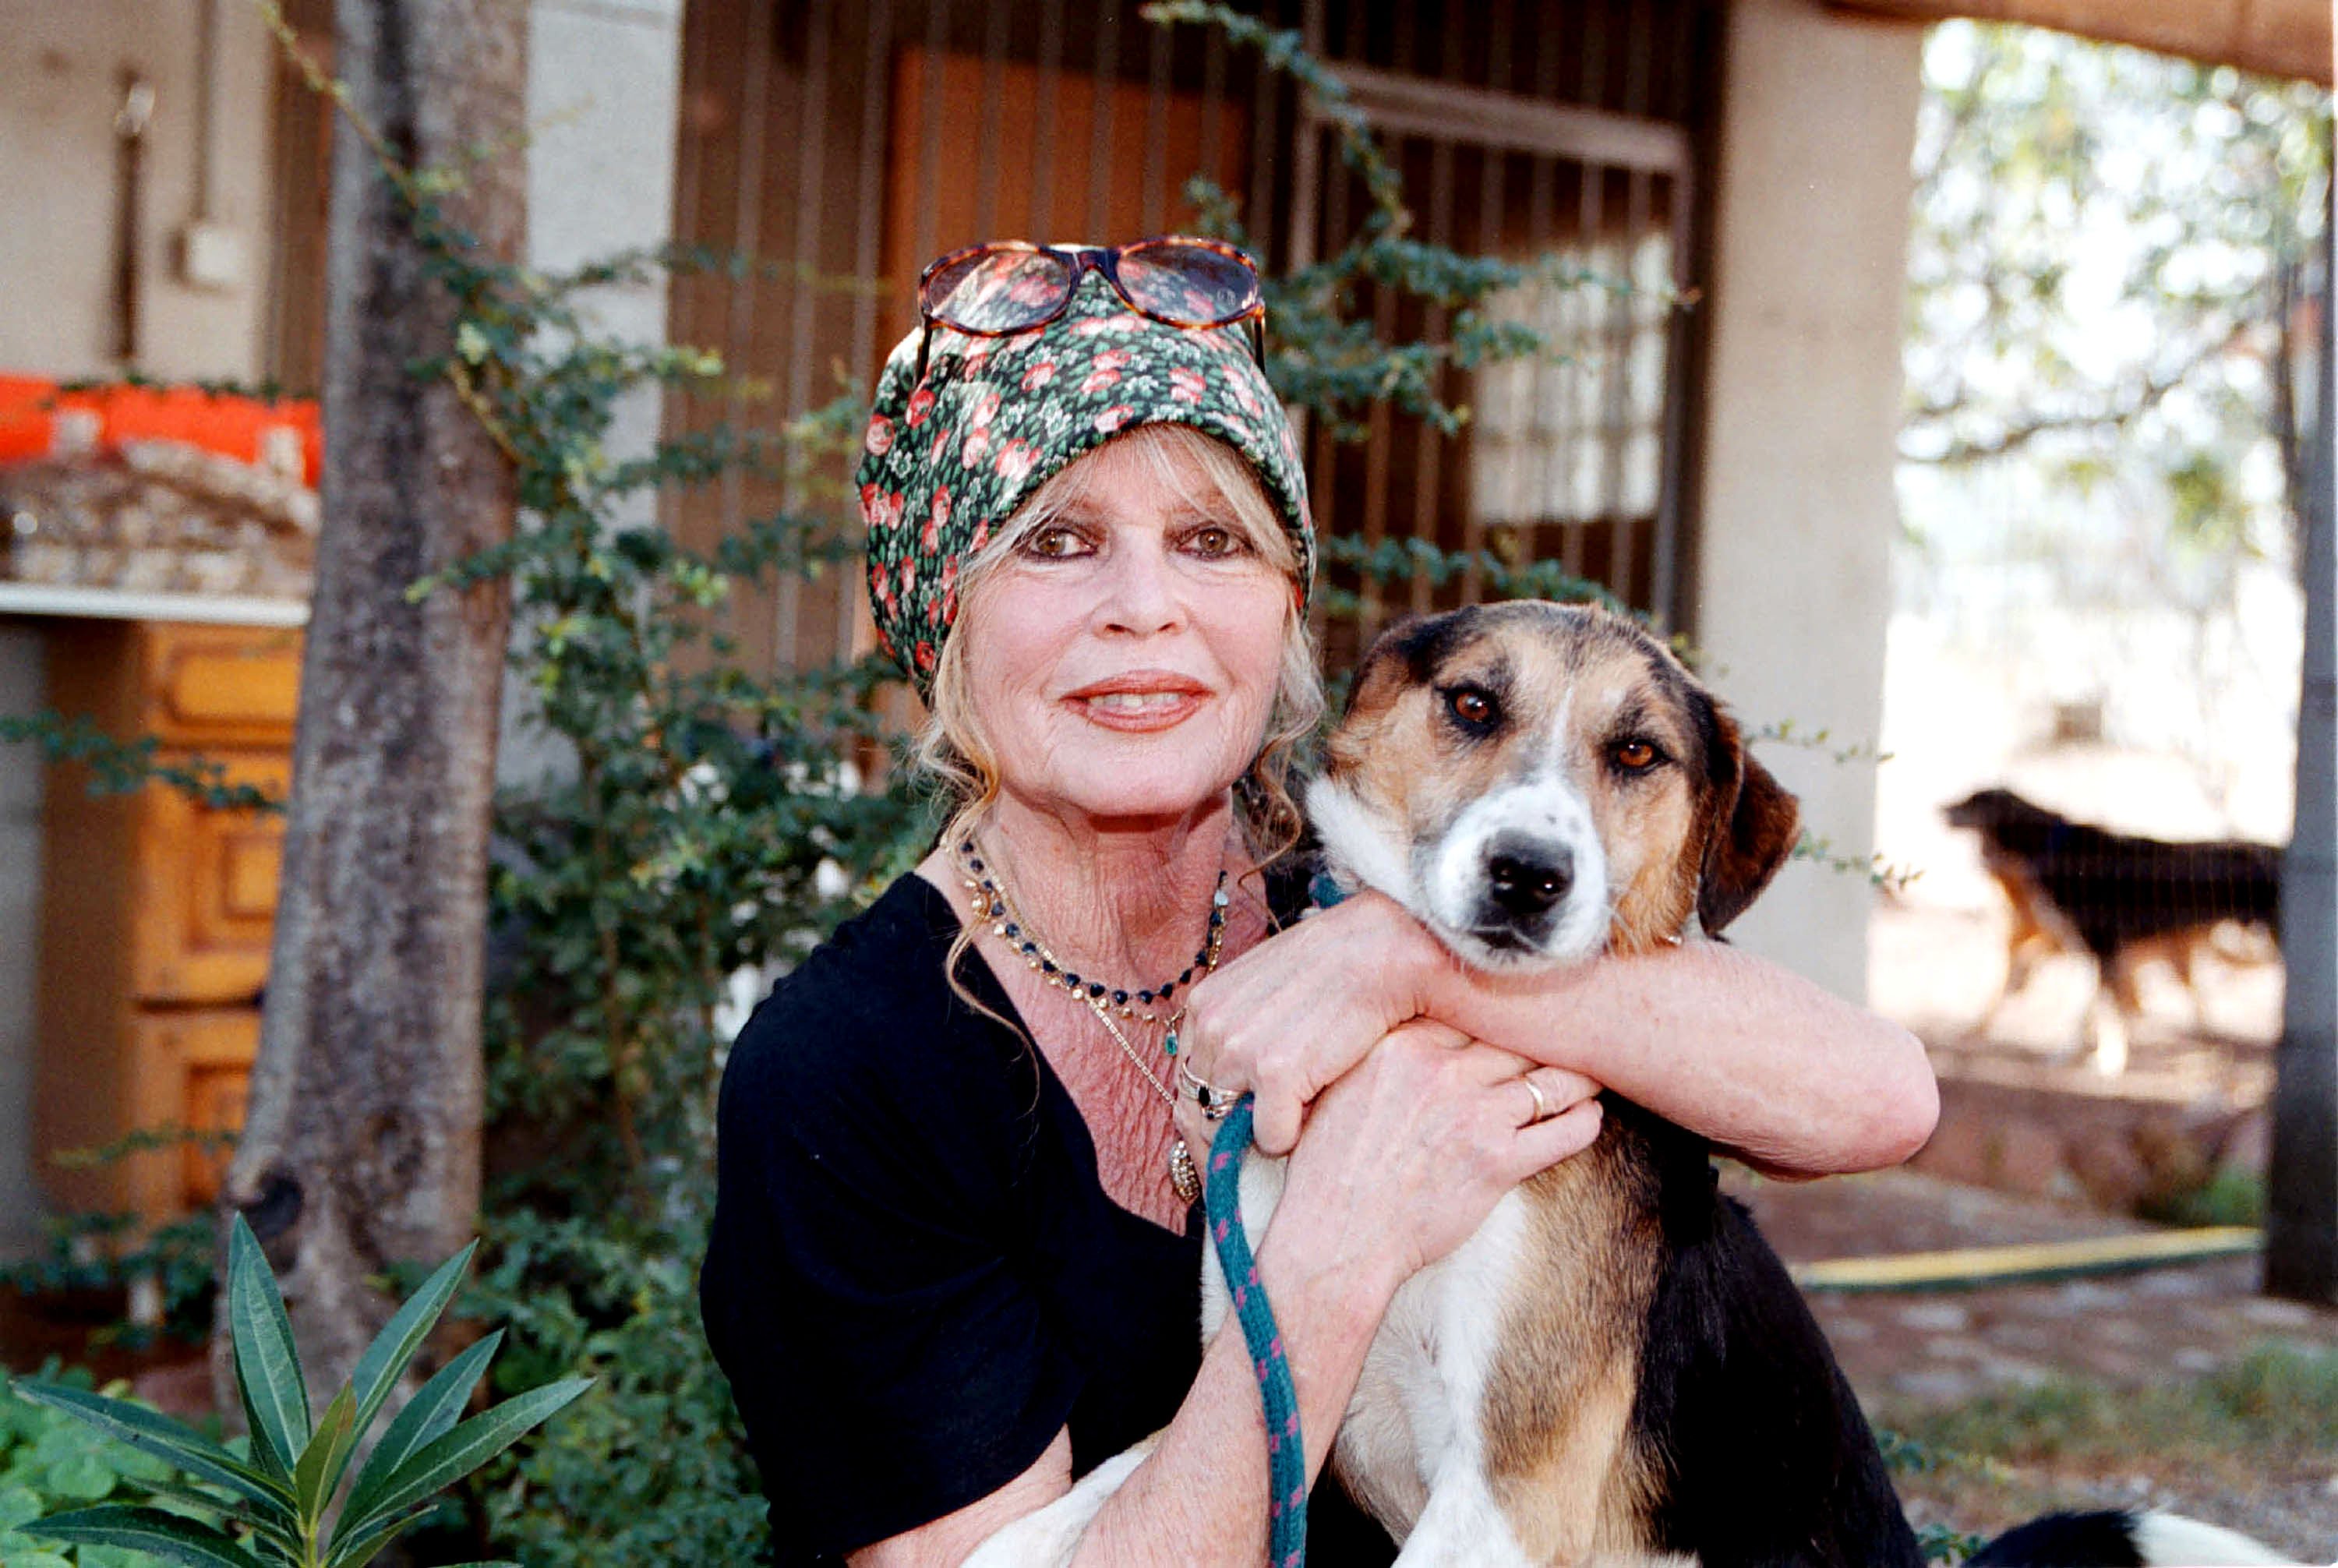 Die Tierschützerin Brigitte Bardot besucht am 7. Oktober 2001 ihr Hunderefugium "The Nice Dogs" von Carnoules in Paris, Frankreich. | Quelle: Getty Images